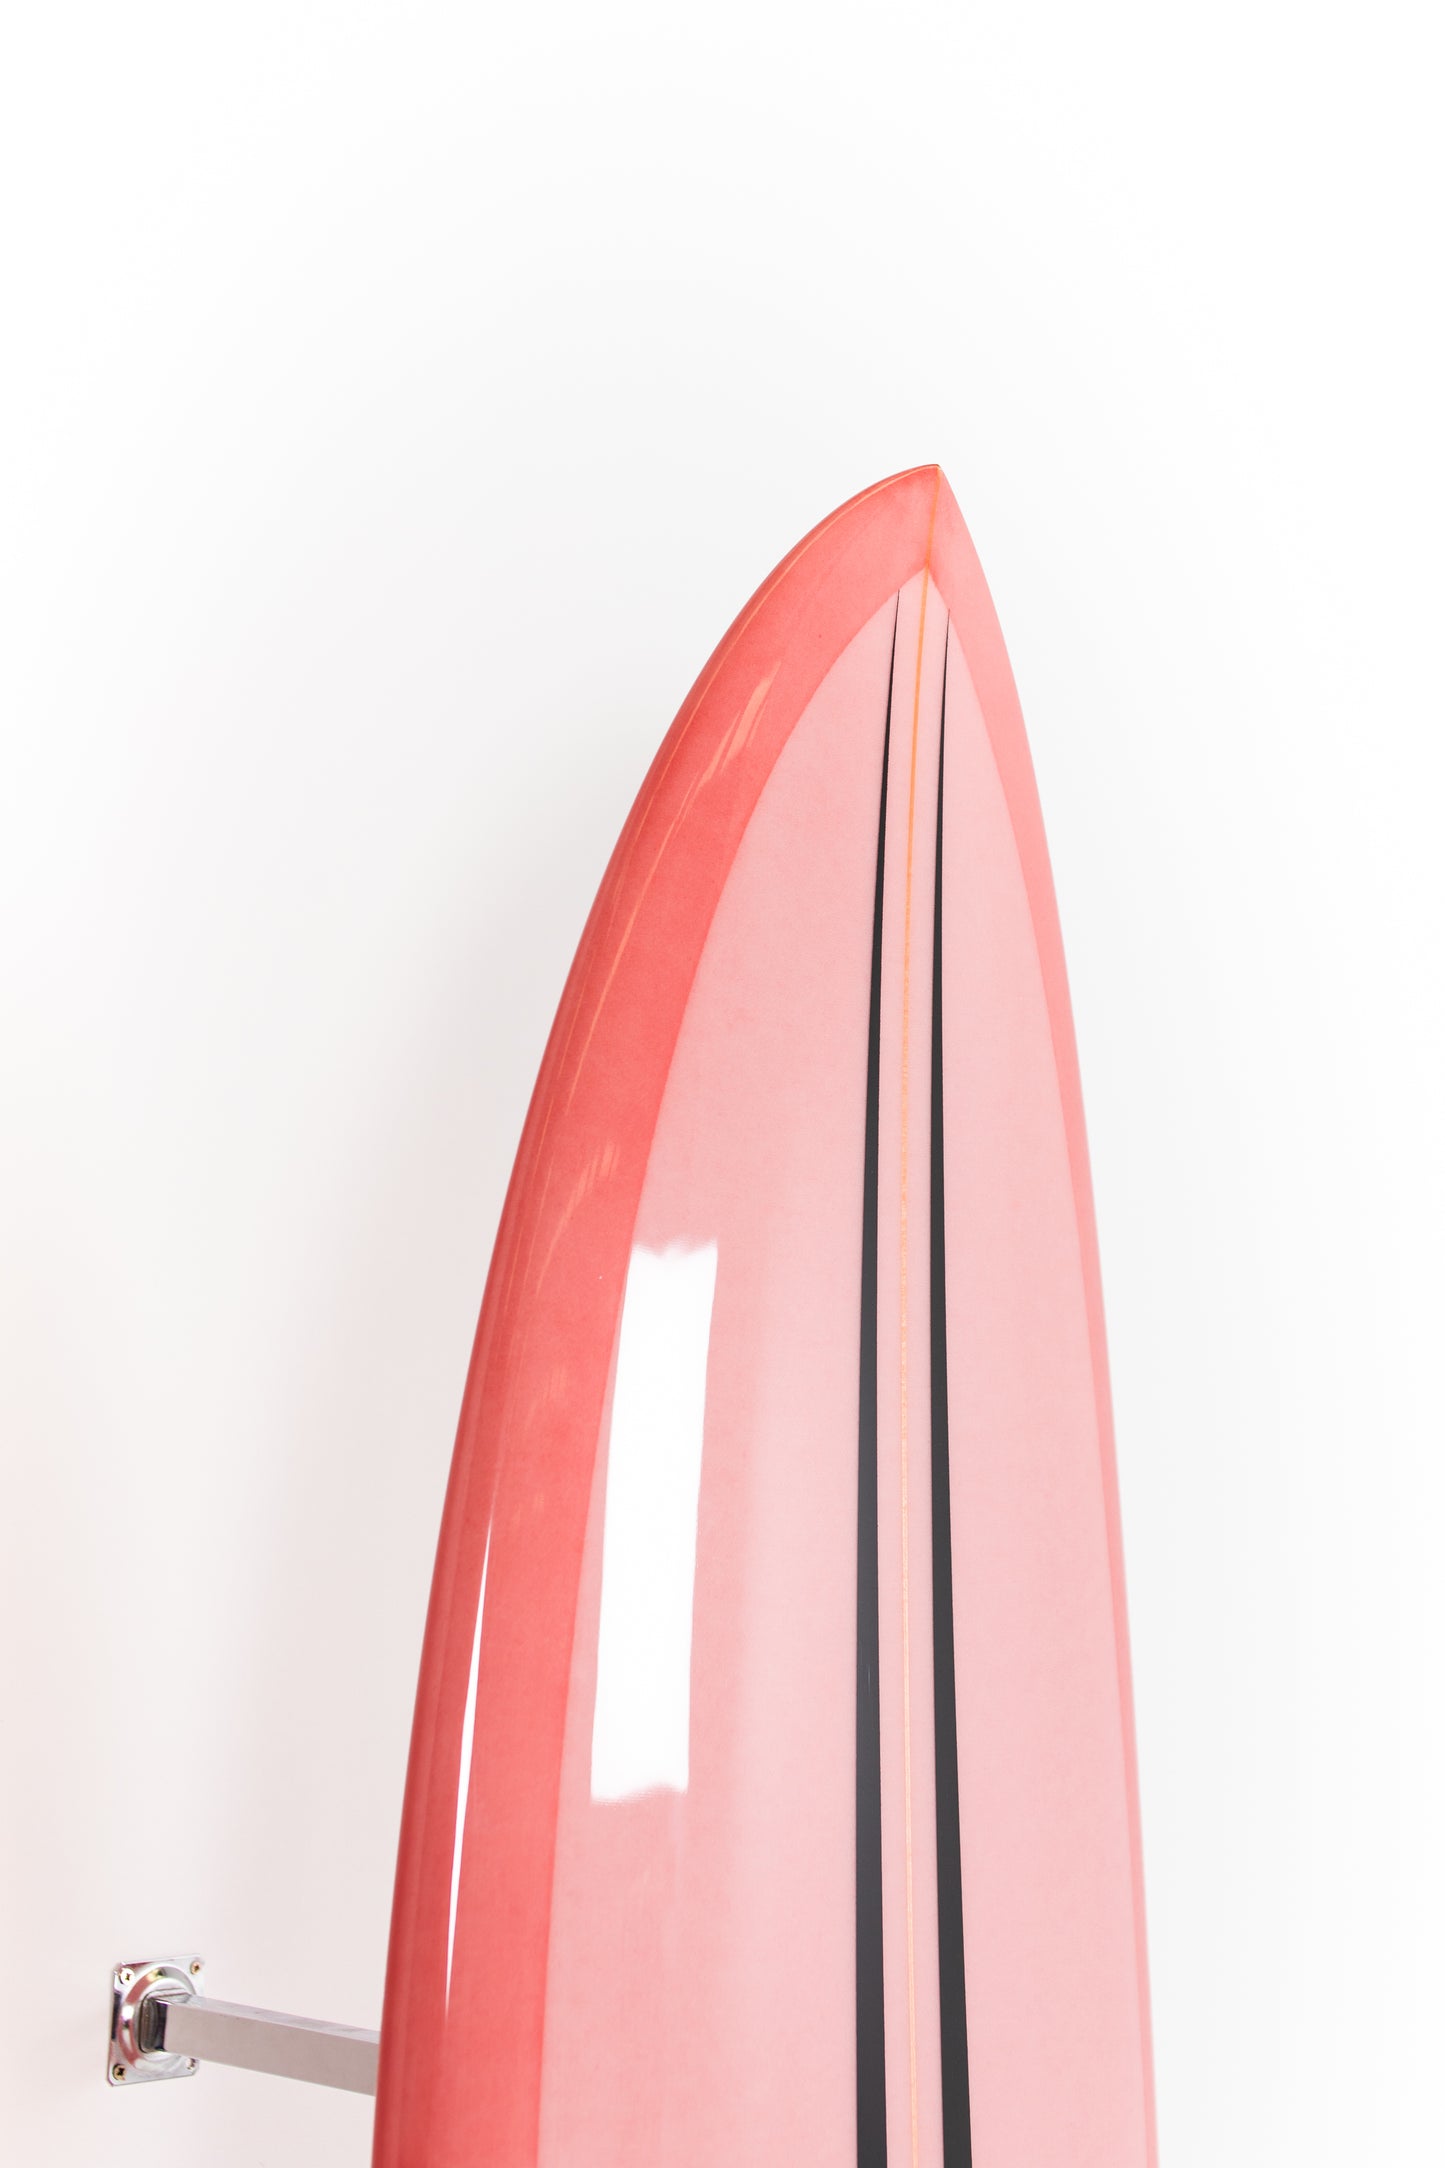 
                  
                    Pukas Surf Shop - Pukas Surfboard - LA CÔTE by Axel Lorentz - 6'6" x 21,13 x 2,81 - 42L -  AX09624
                  
                